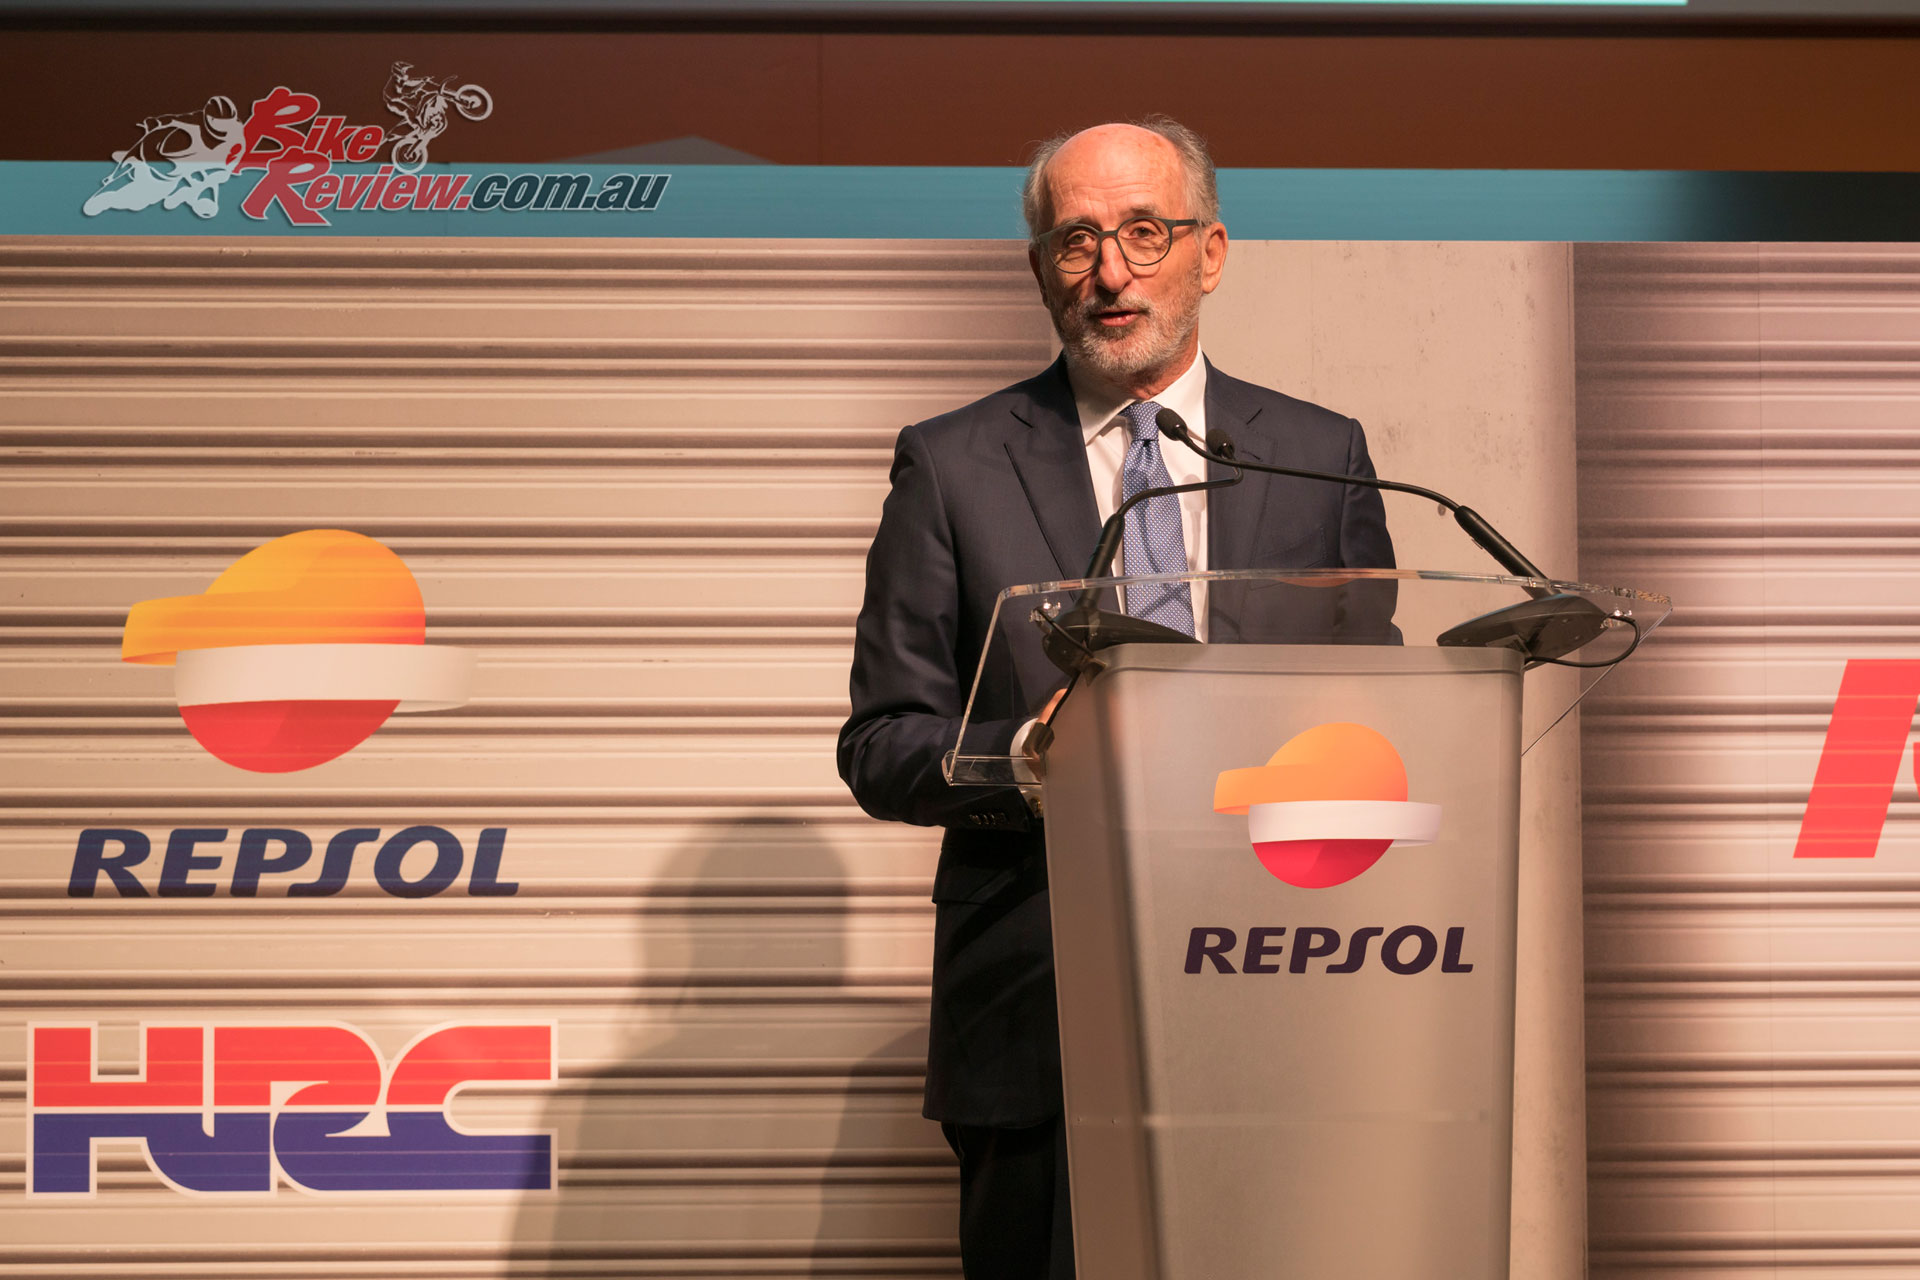 Antonio Brufau, Repsol CEO and Chairman